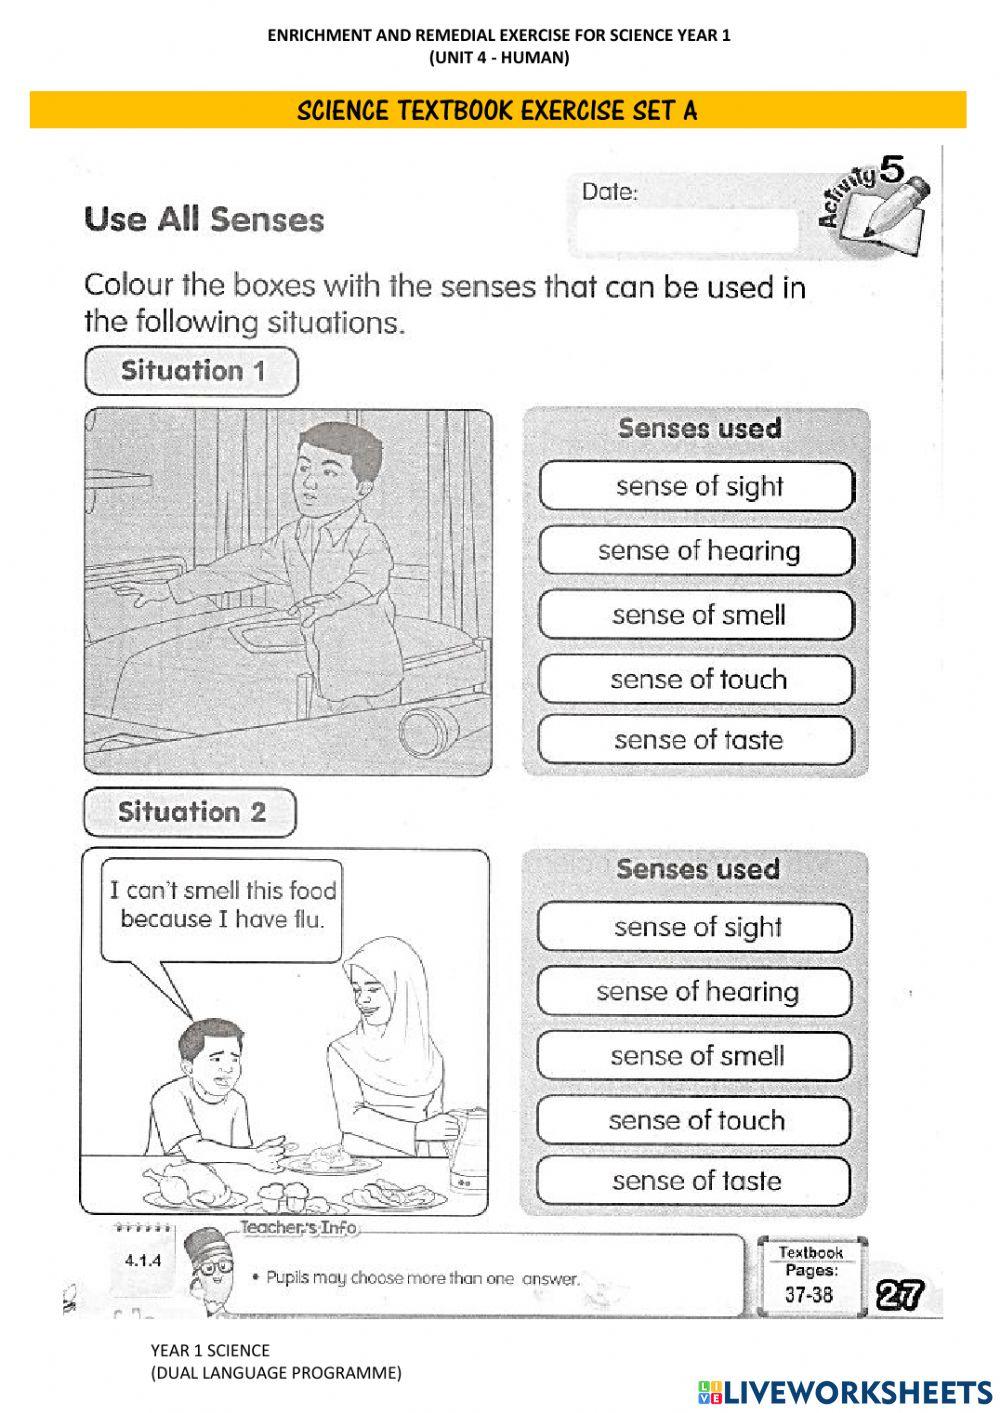 Human's Five Senses (School's Activity Book)